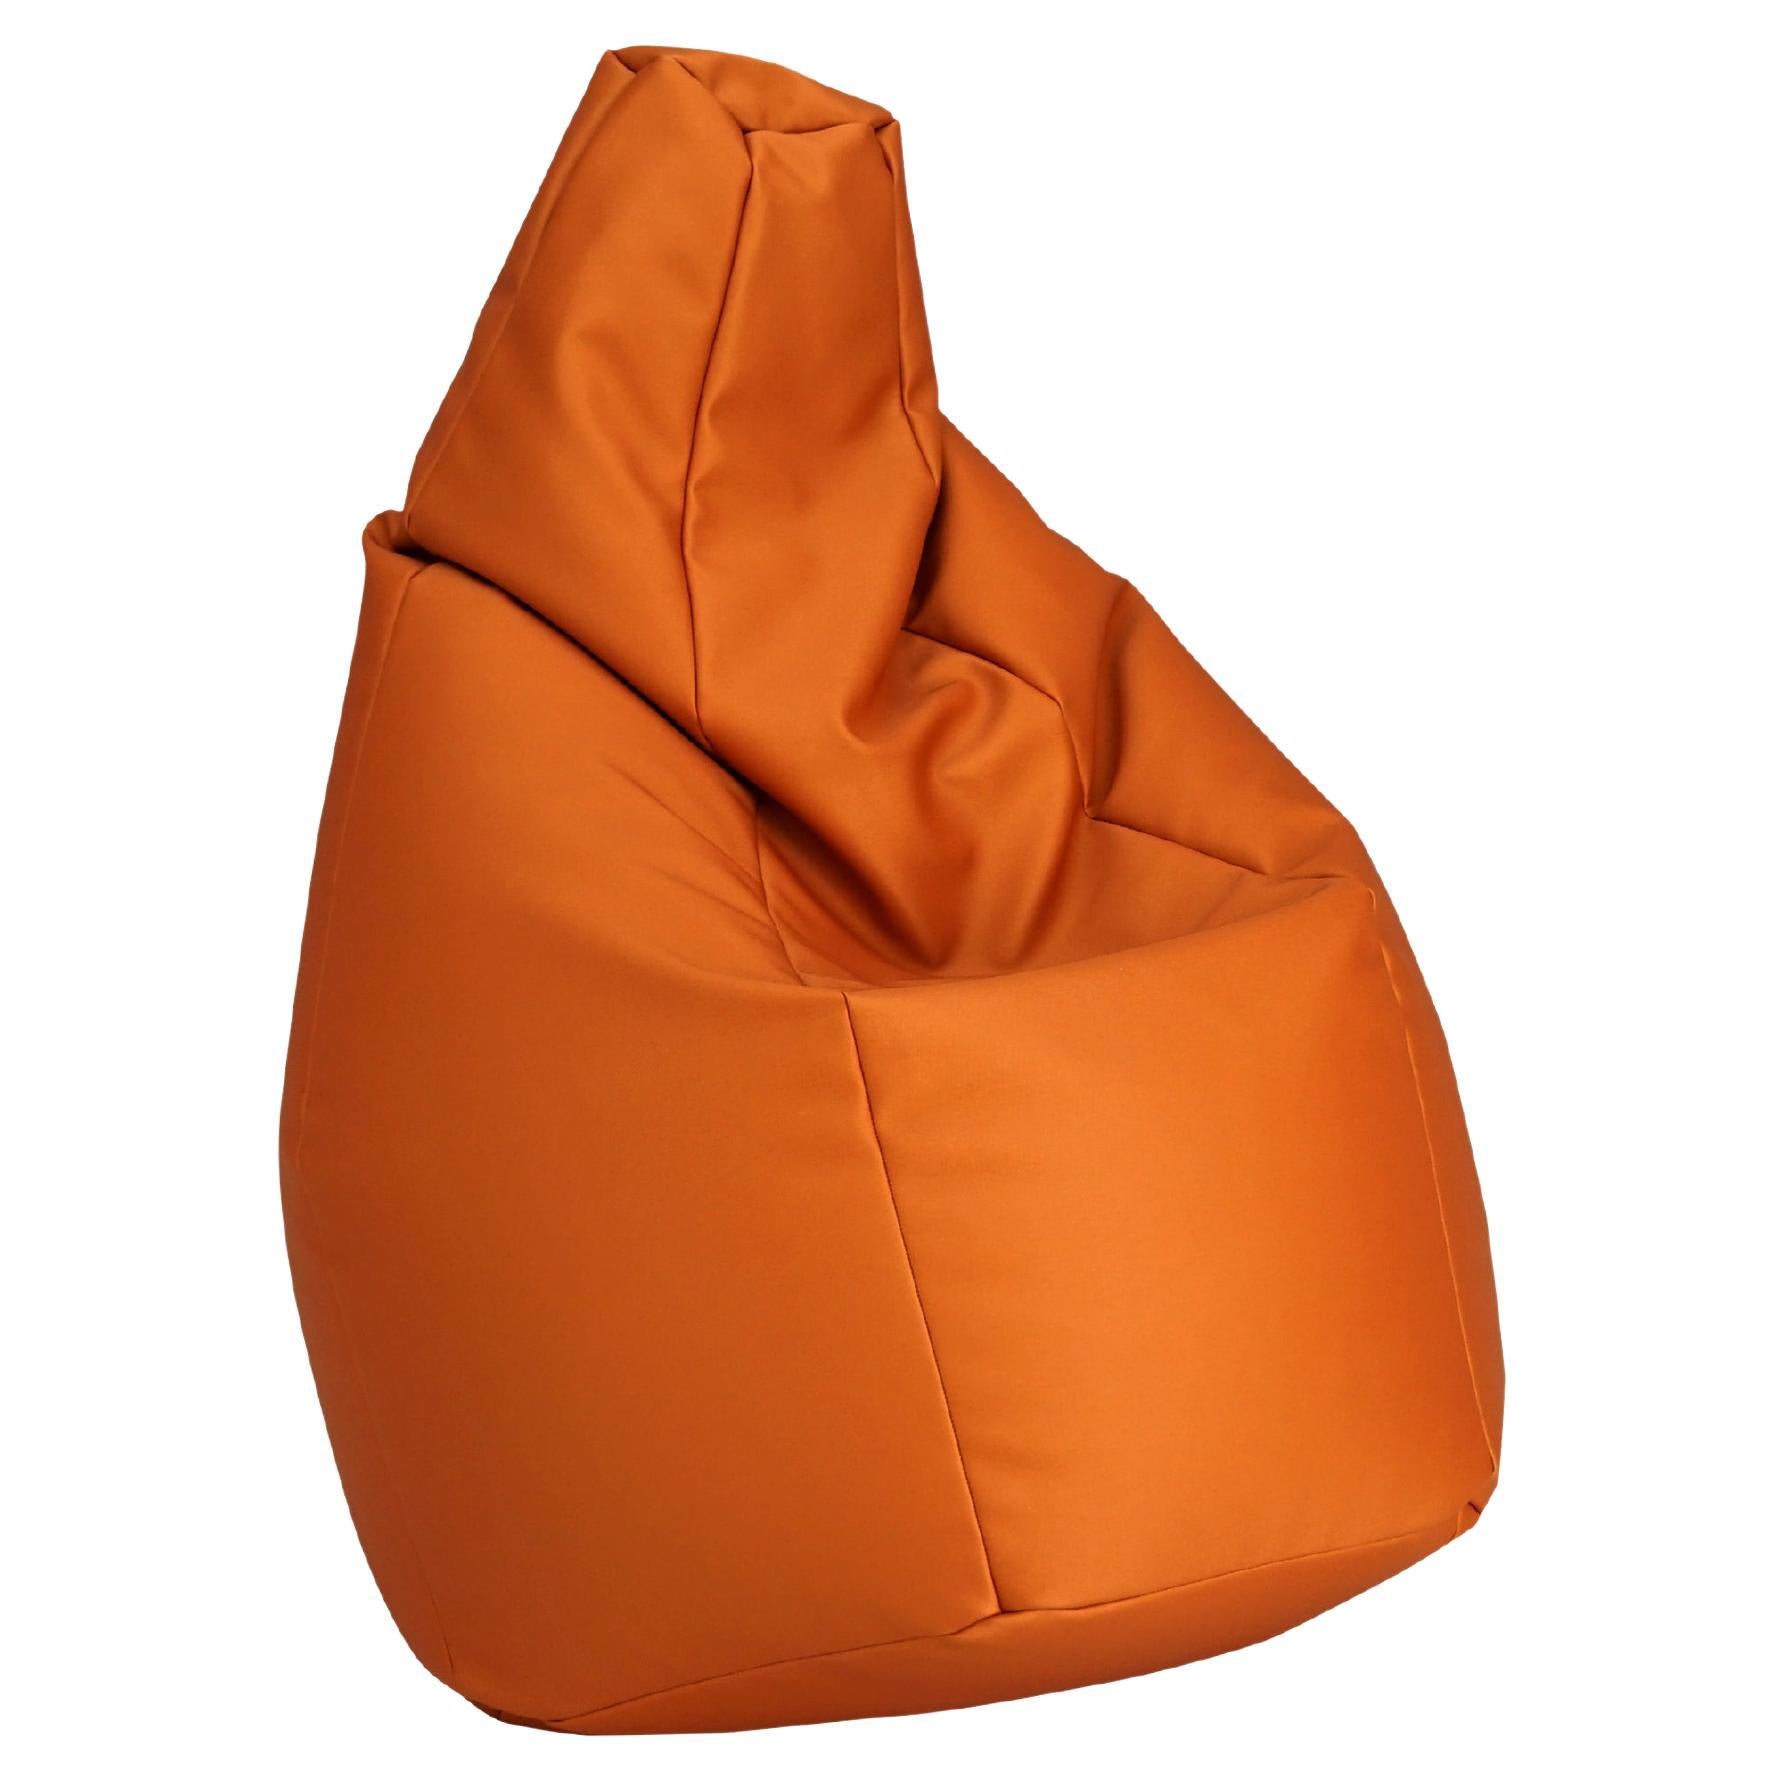 Zanotta Large Sacco in Orange Vip Fabric by Gatti, Paolini, Teodoro For Sale